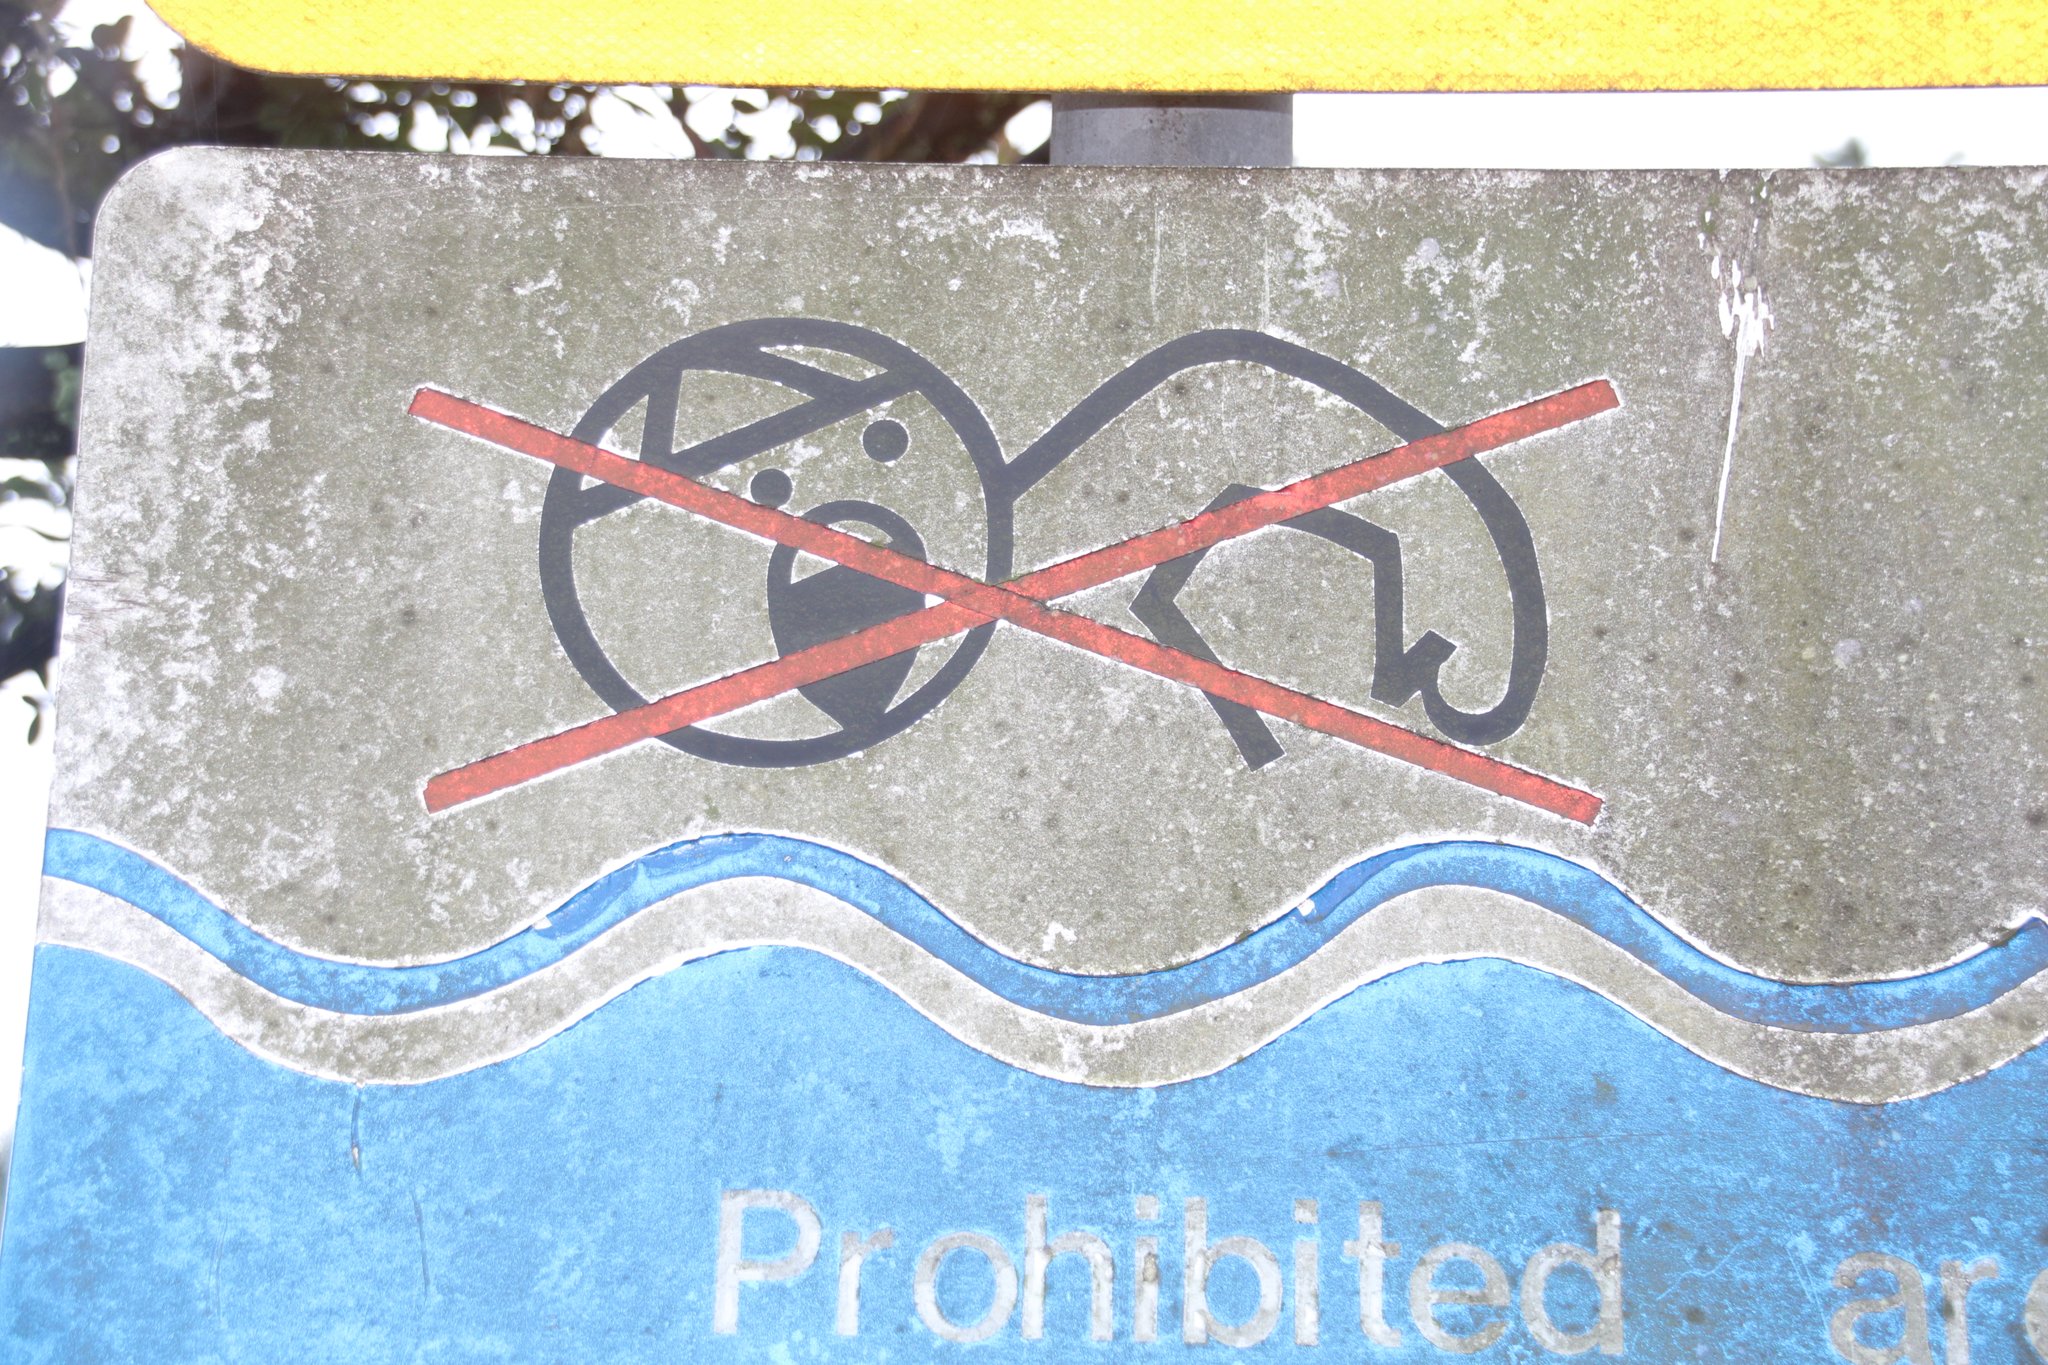 Tsuneshun 浜松 中田島砂丘の駐車場にある遊泳禁止の看板見て昔nhk教育 Eテレ でやってたaeiouを思い出した笑